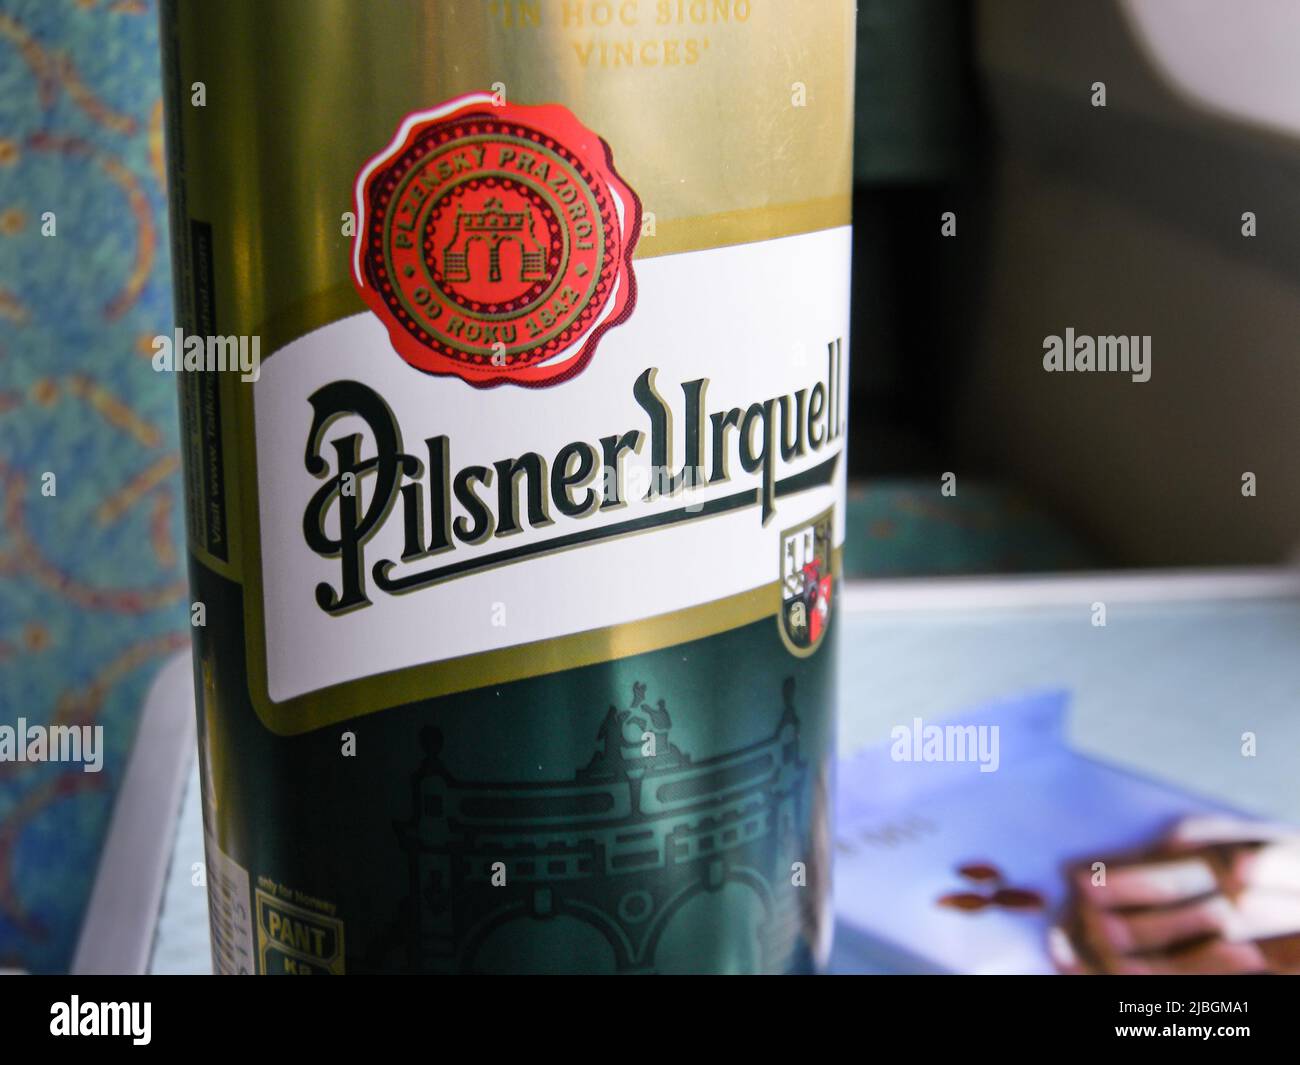 Vienna, Austria - May 31, 2011 : Can of Pilsner Urquell, Czech lager brewed by the Pilsner Urquell Brewery in Pilsen, Czech Republic. Stock Photo